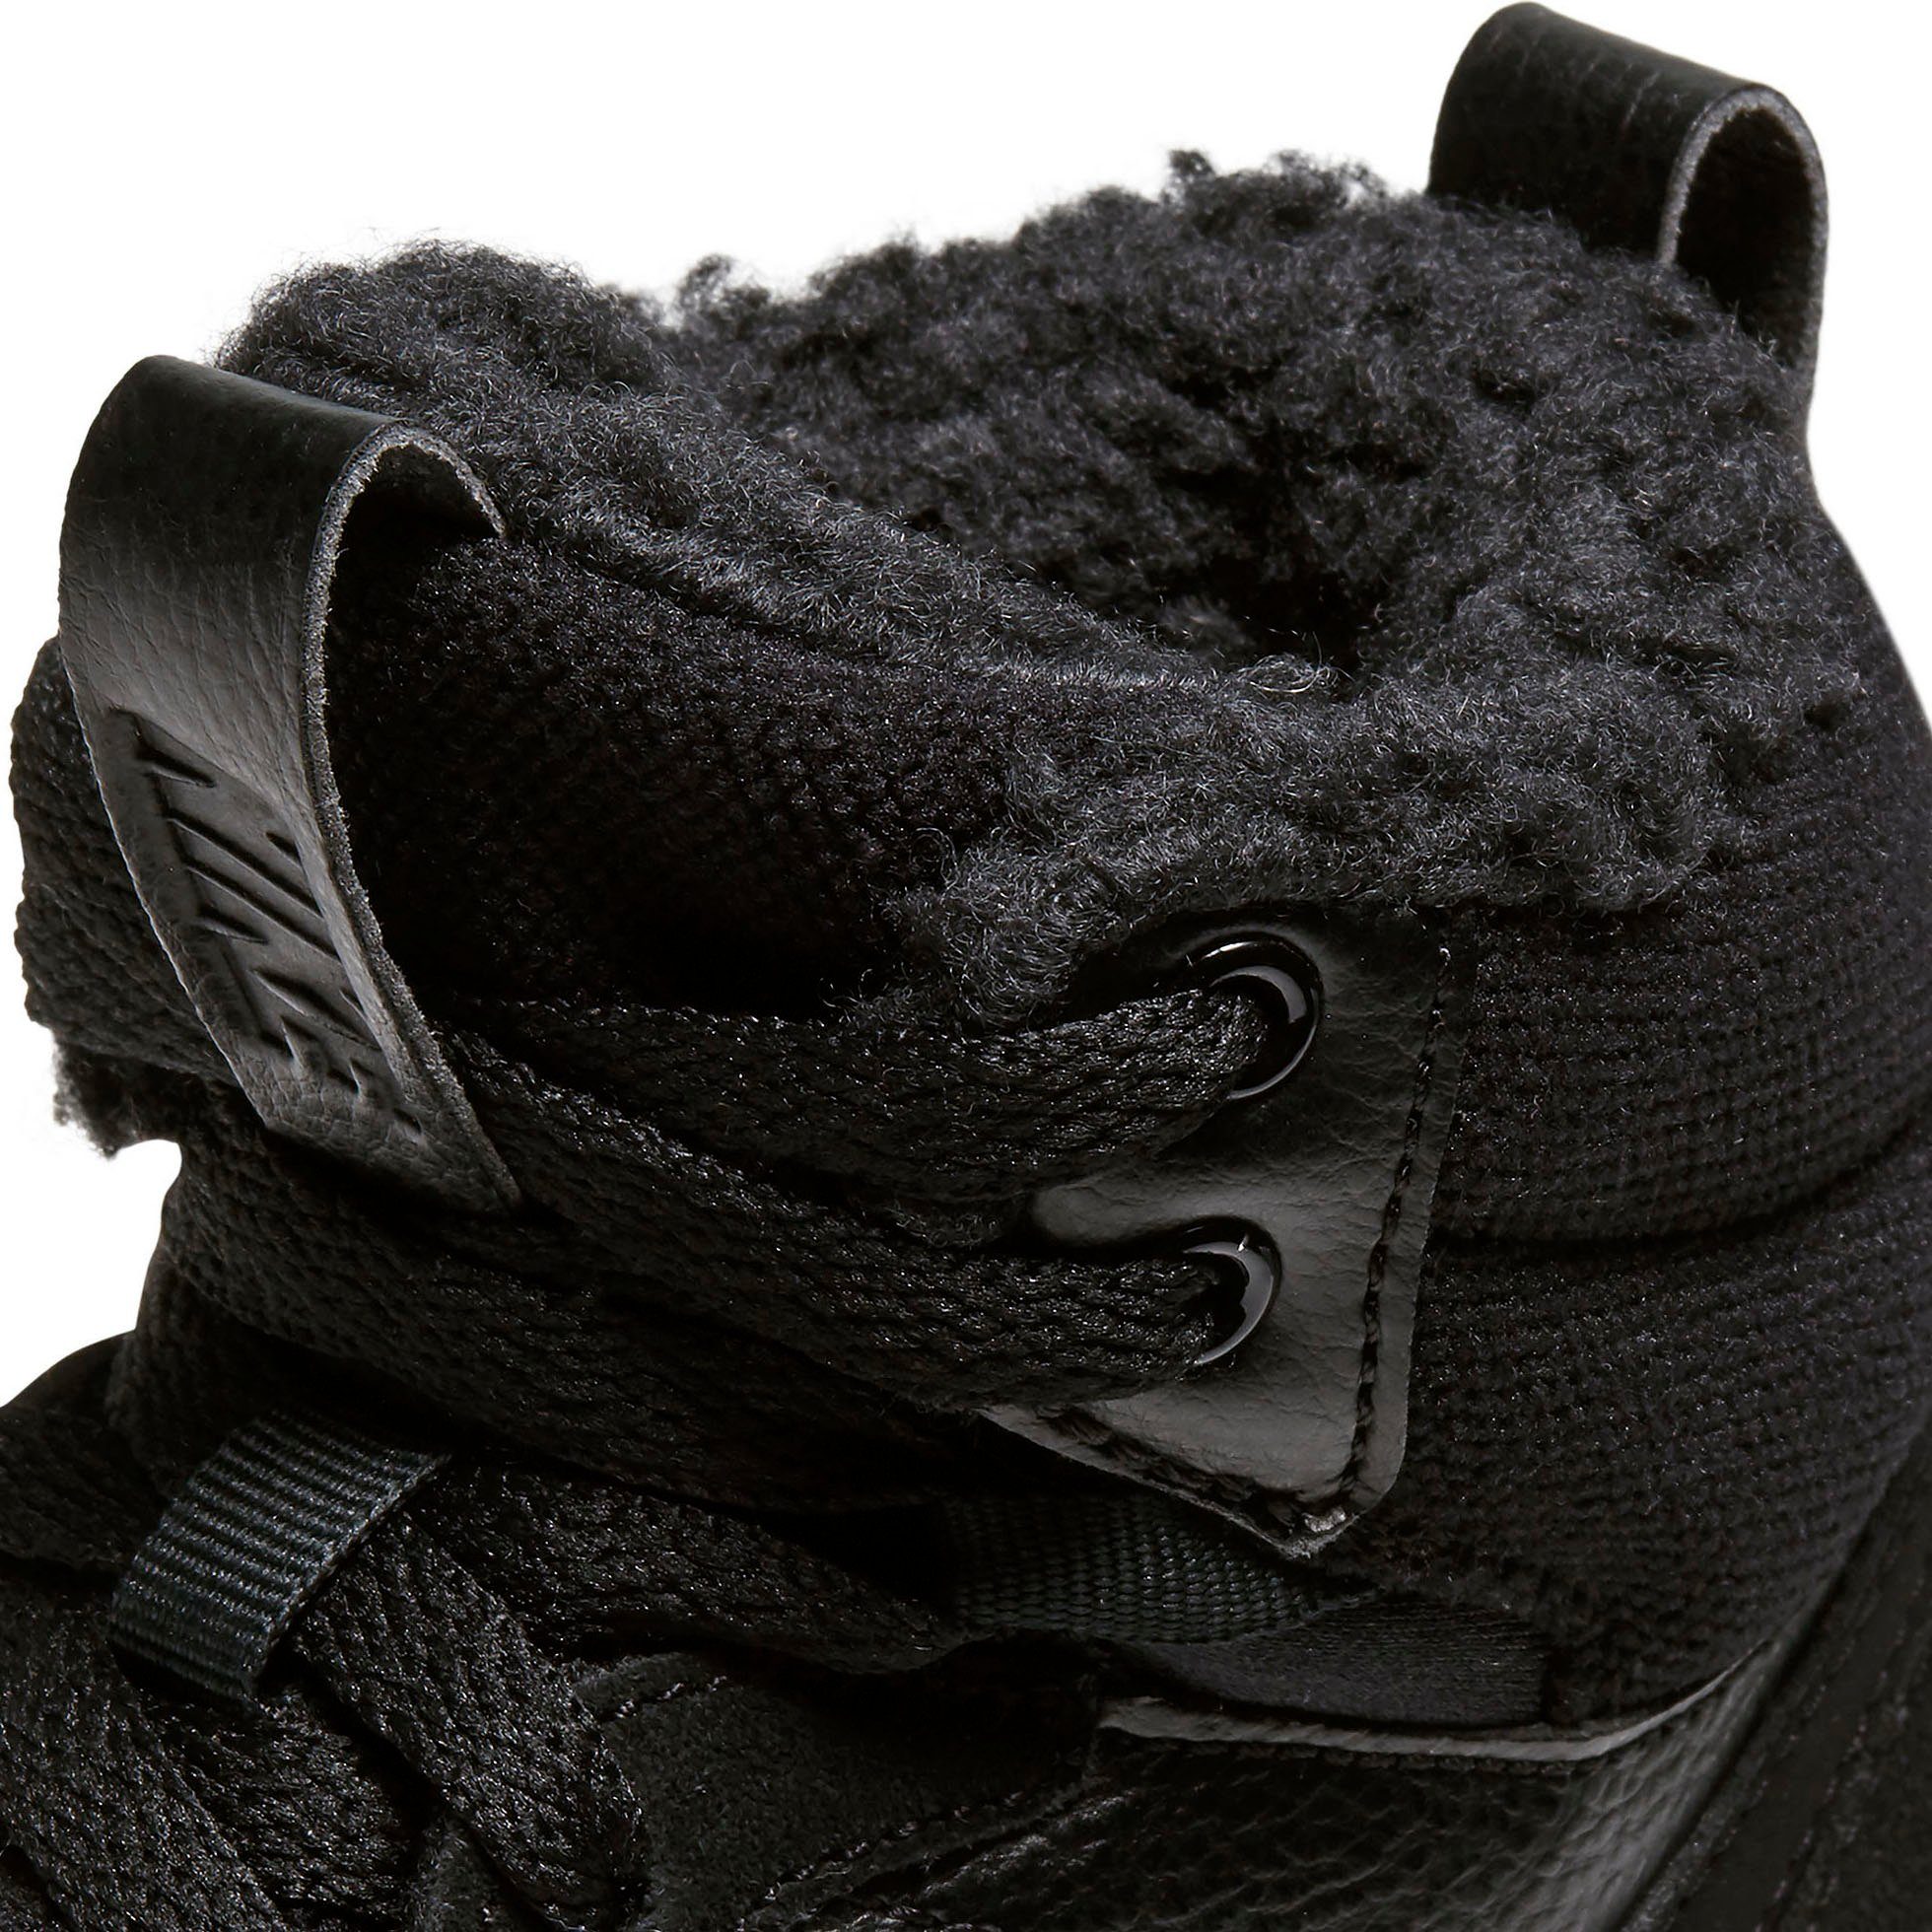 Nike Sportswear COURT BOROUGH MID Spuren auf 2 Air des 1 den Force Design Sneaker